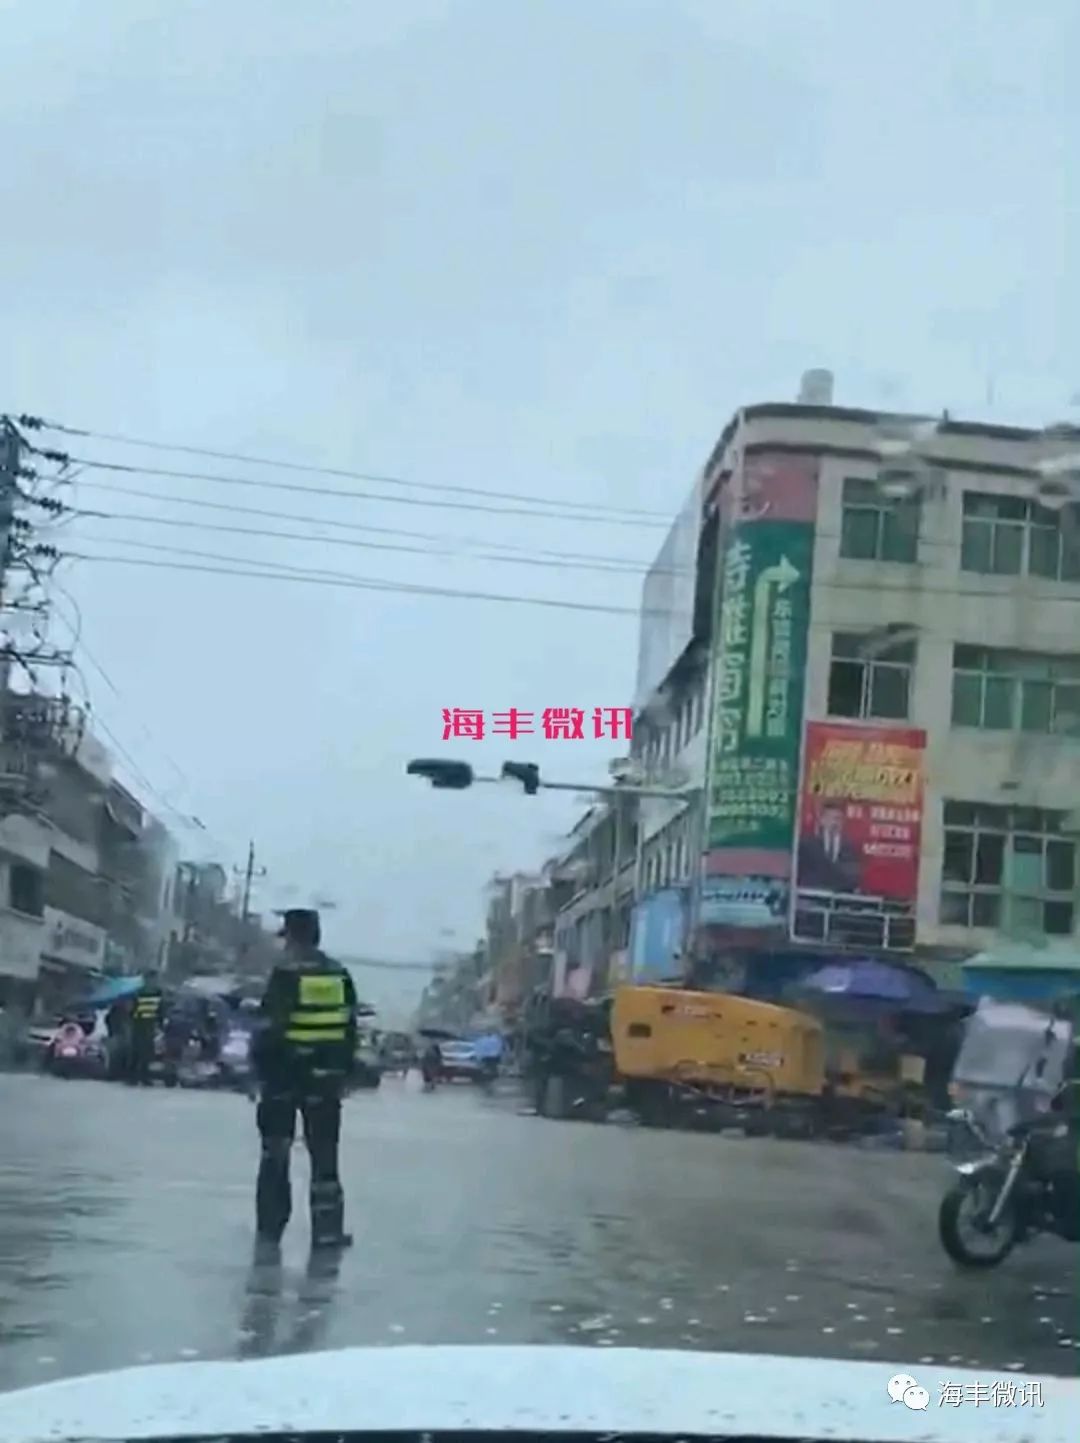 海丰梅陇镇多名工作人员冒雨站路中,发生